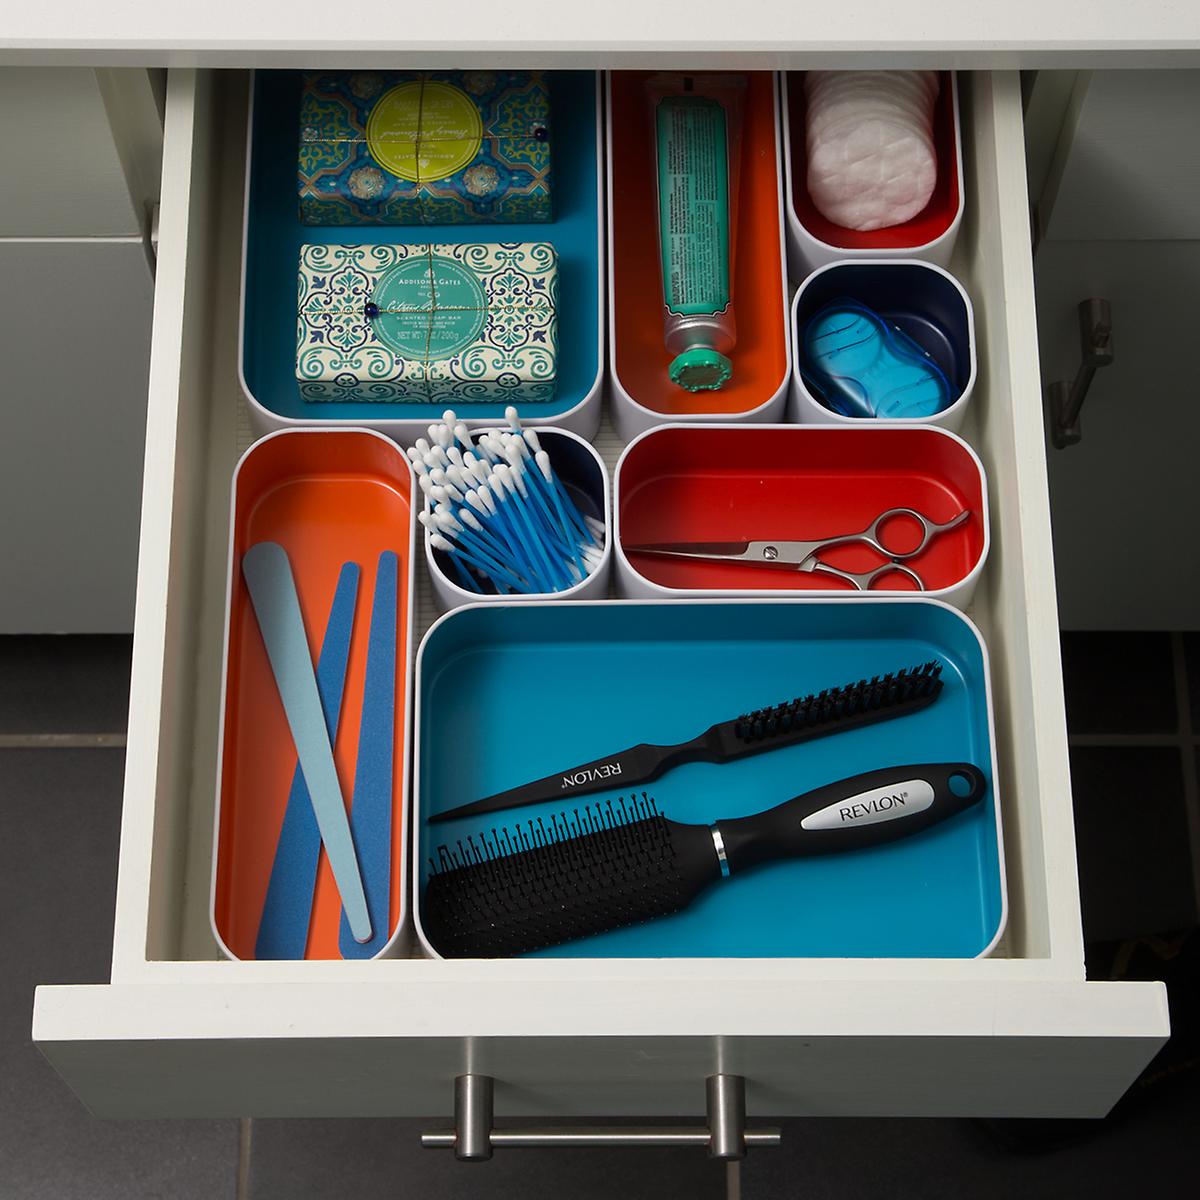 bathroom drawer organizer